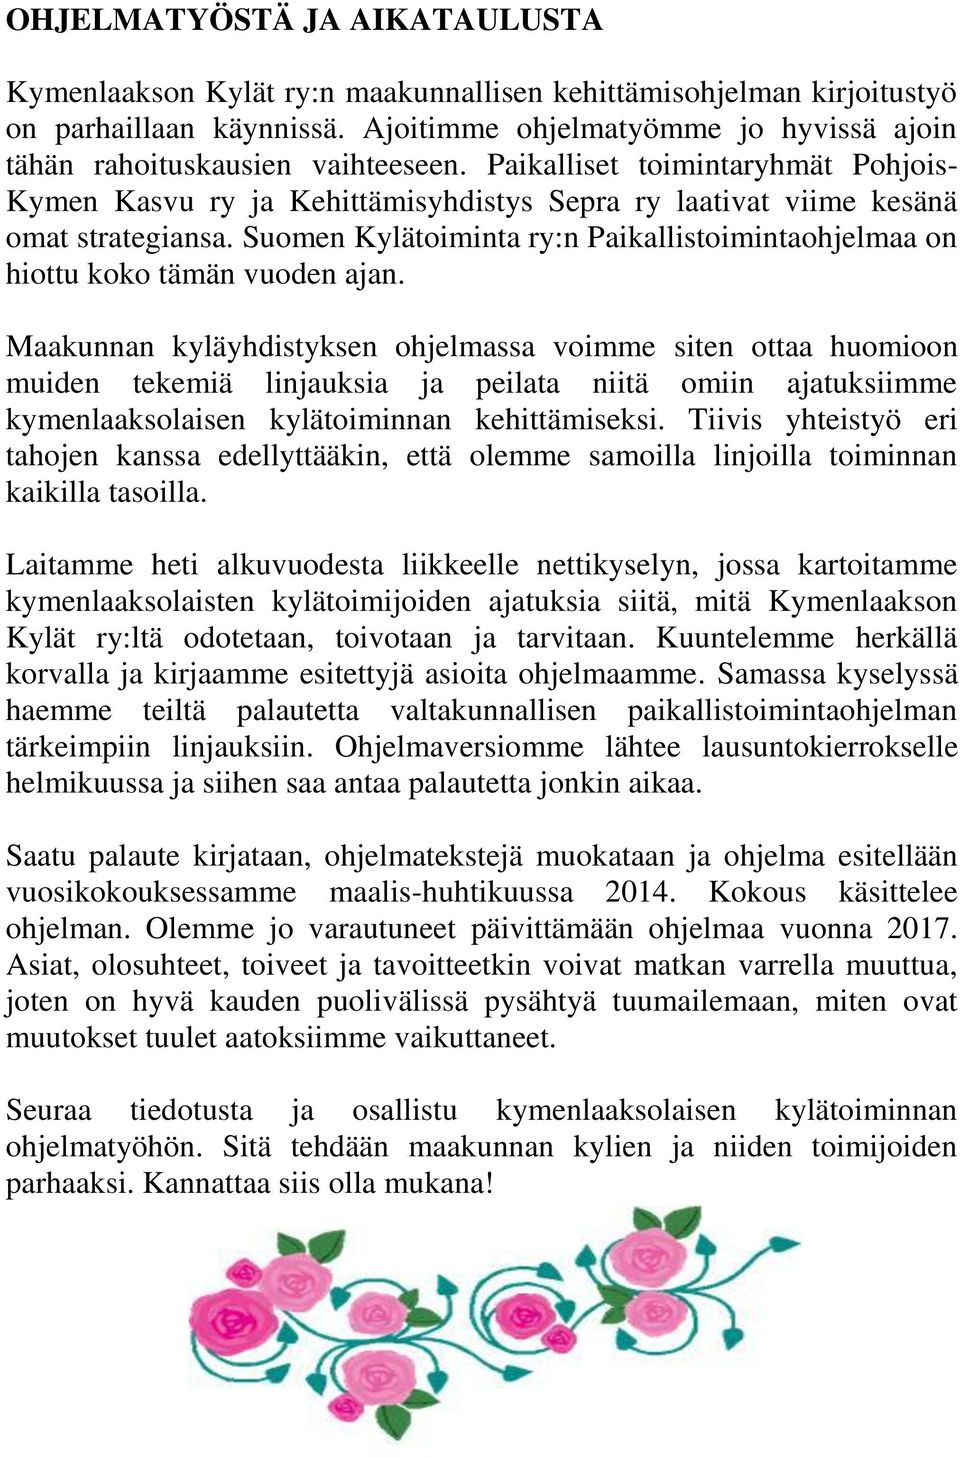 Suomen Kylätoiminta ry:n Paikallistoimintaohjelmaa on hiottu koko tämän vuoden ajan.